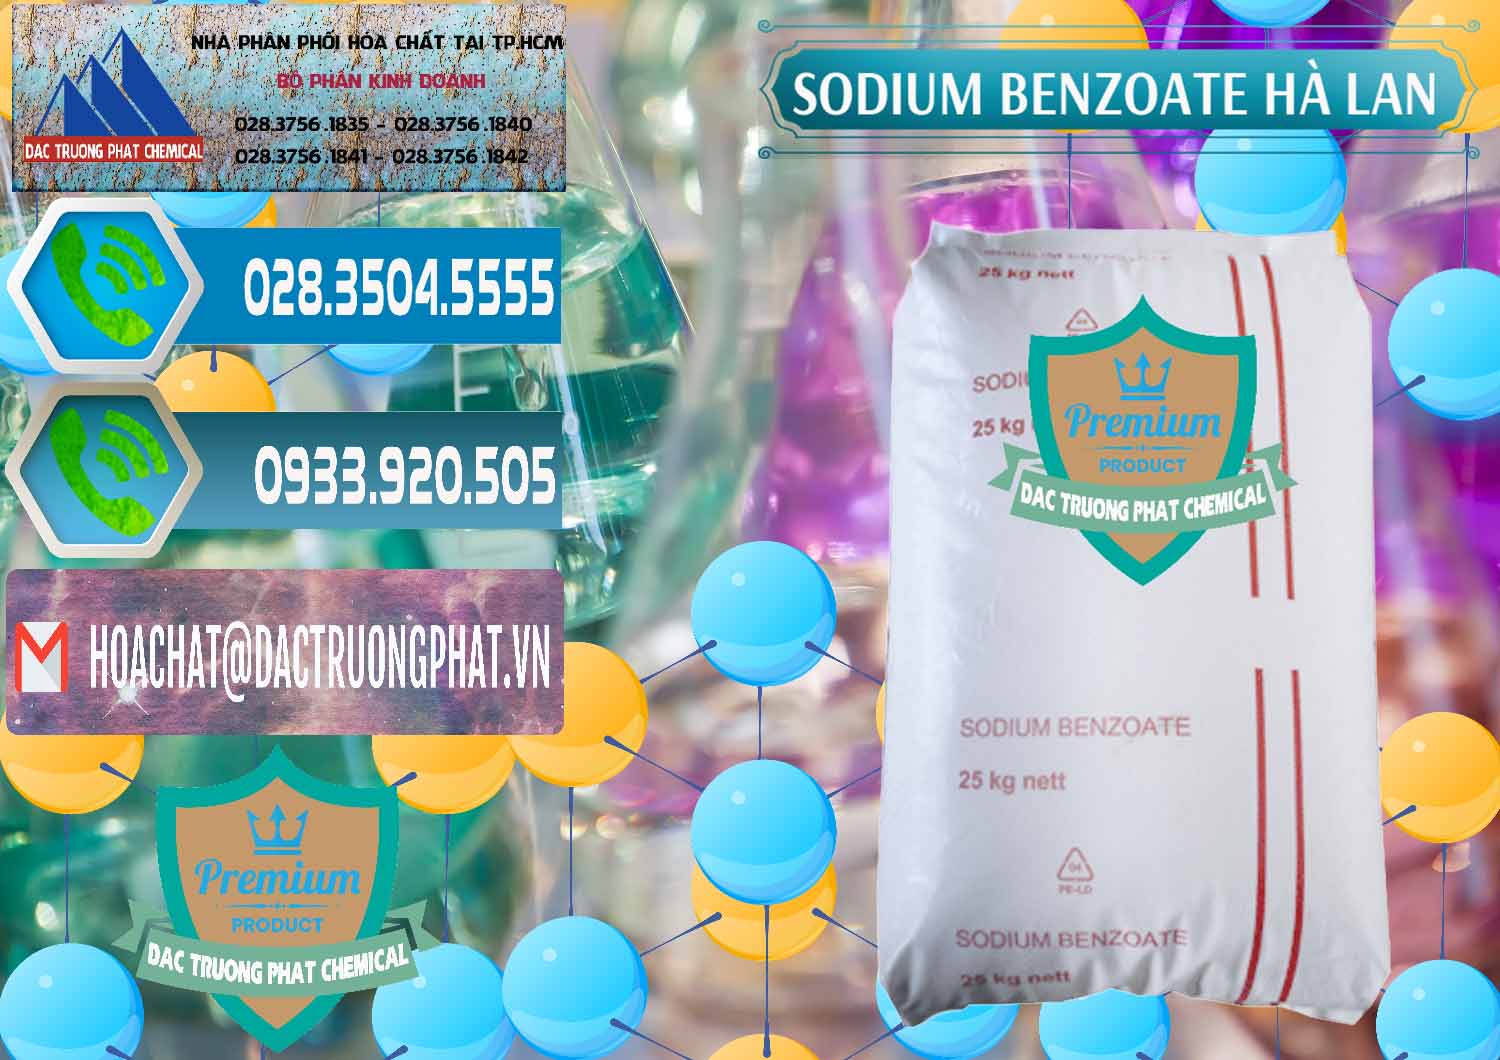 Chuyên bán và phân phối Sodium Benzoate - Mốc Bột Chữ Cam Hà Lan Netherlands - 0360 - Chuyên nhập khẩu ( cung cấp ) hóa chất tại TP.HCM - congtyhoachat.net